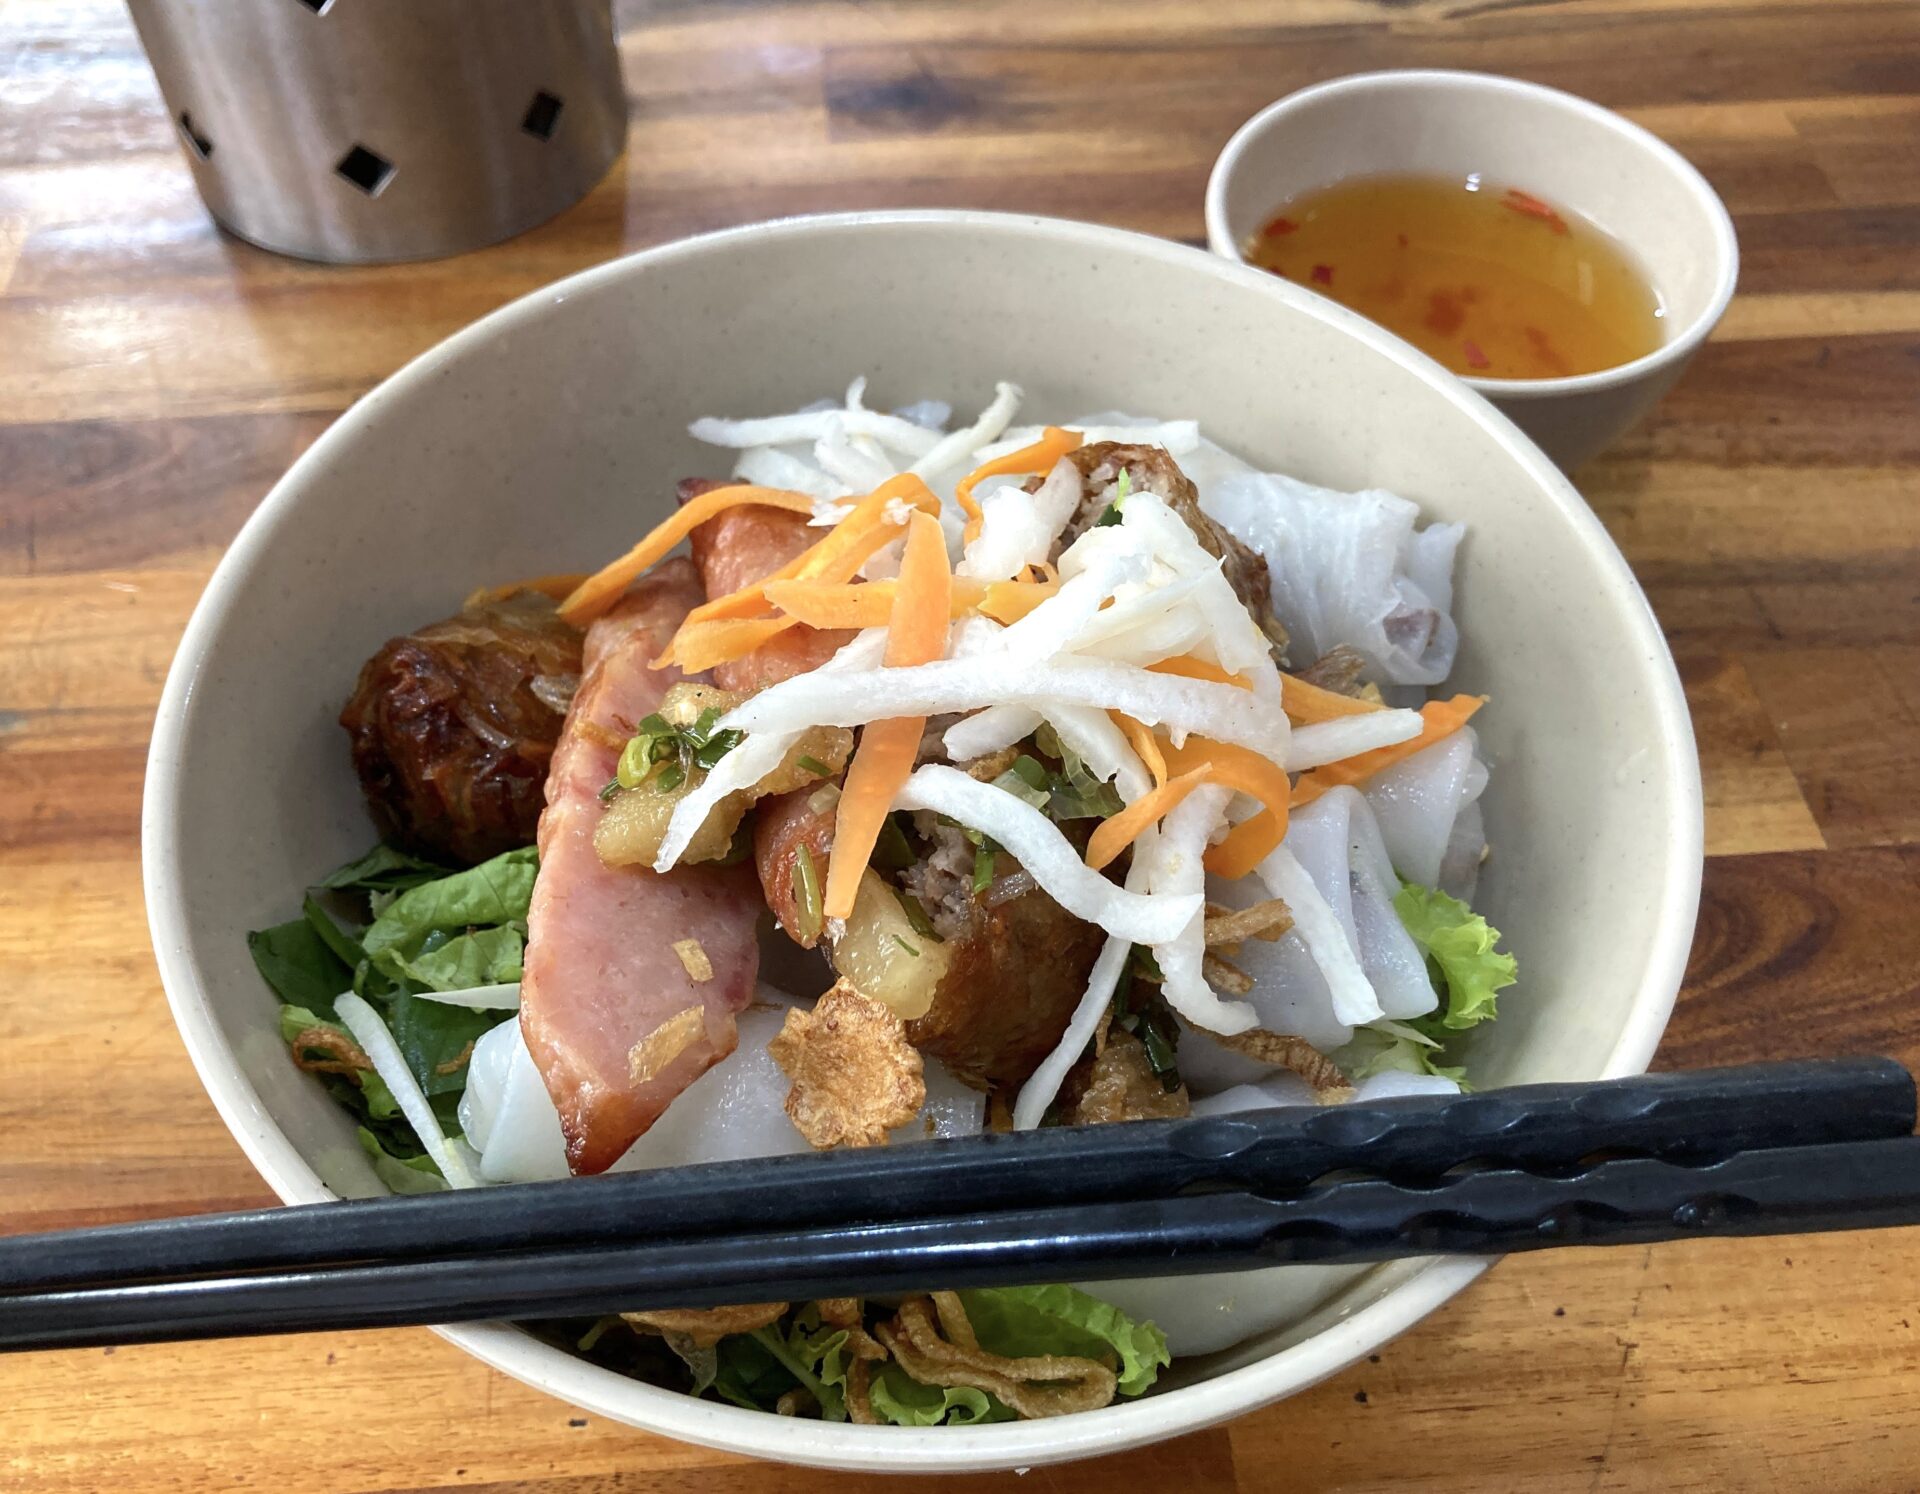 Bún thịt nướng の麺をBánh cuốn に変えたVer
これがまた美味い♪